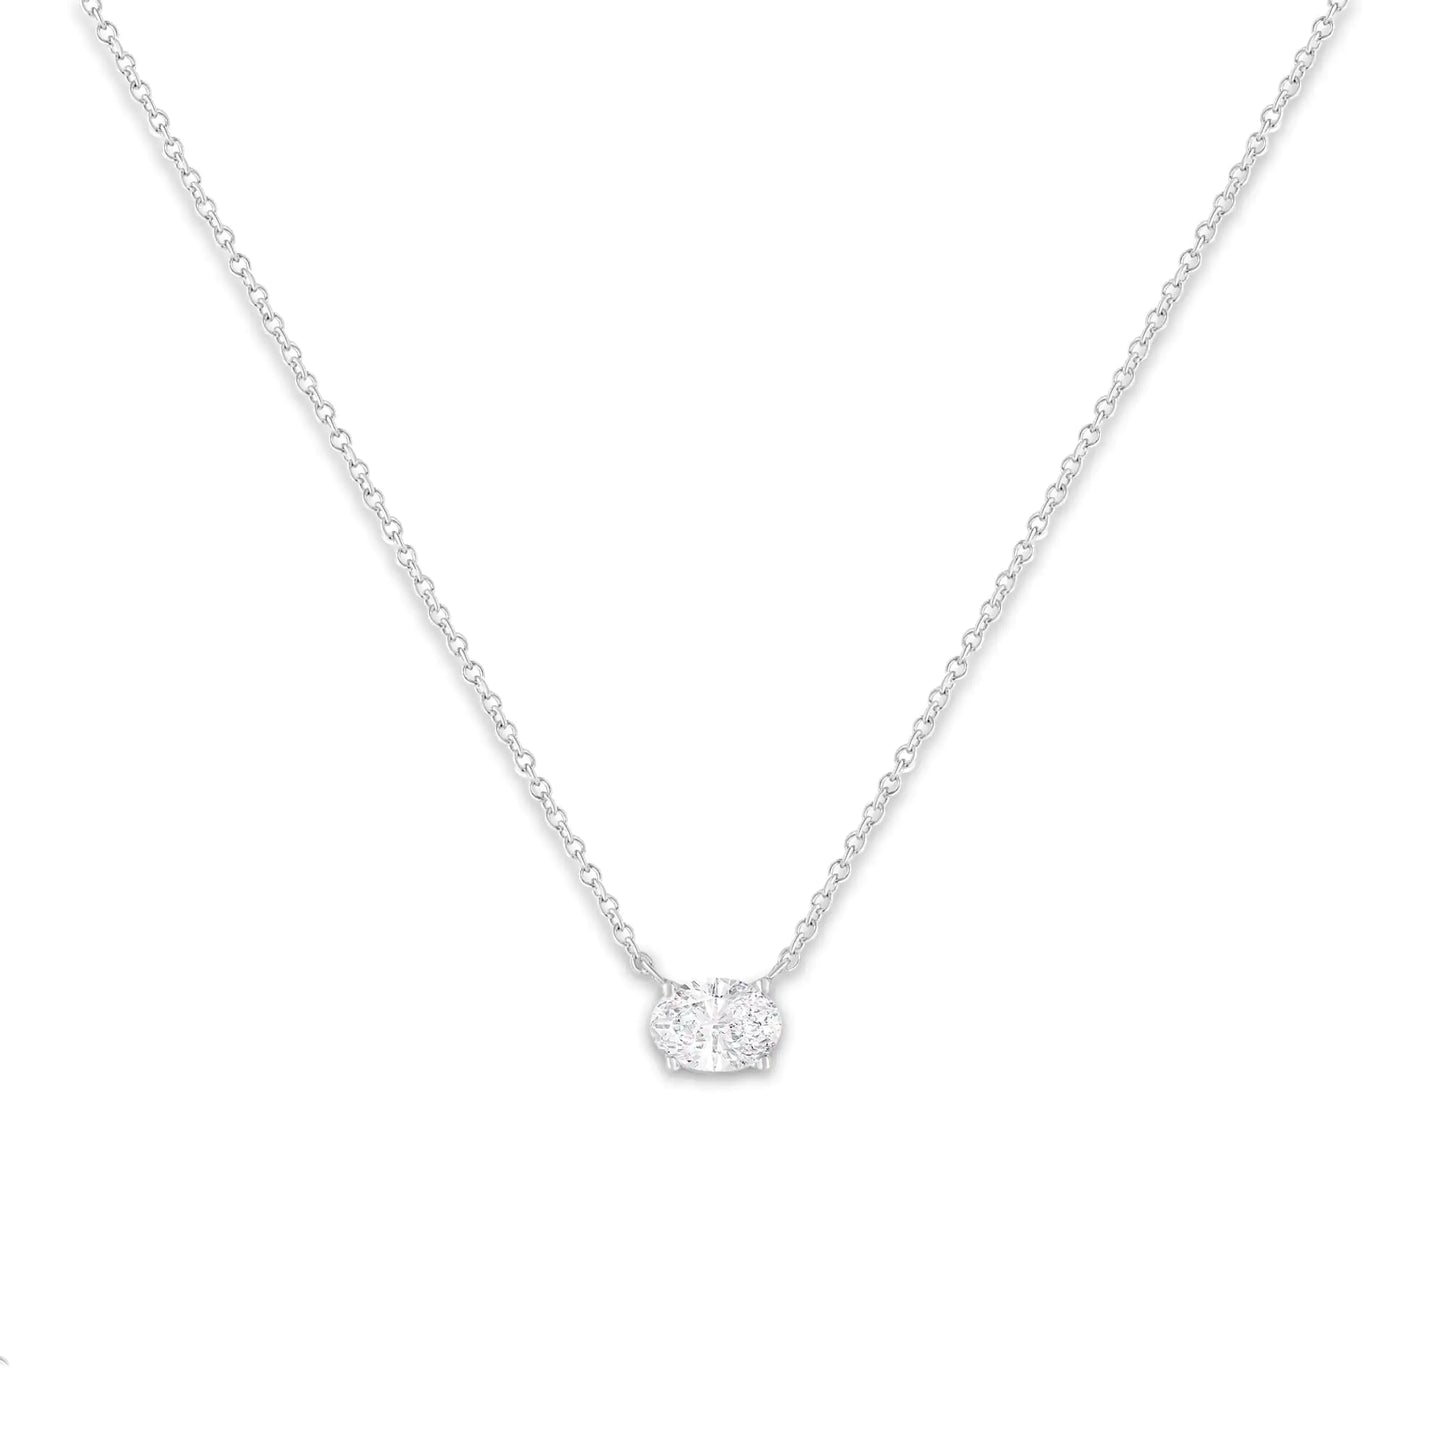 IGI Certified 10K White Gold 1/2 cttw Lab Grown Oval Shape Solitaire Diamond East West 18" Pendant Necklace (E-F Color, VS1-VS2 Clarity)